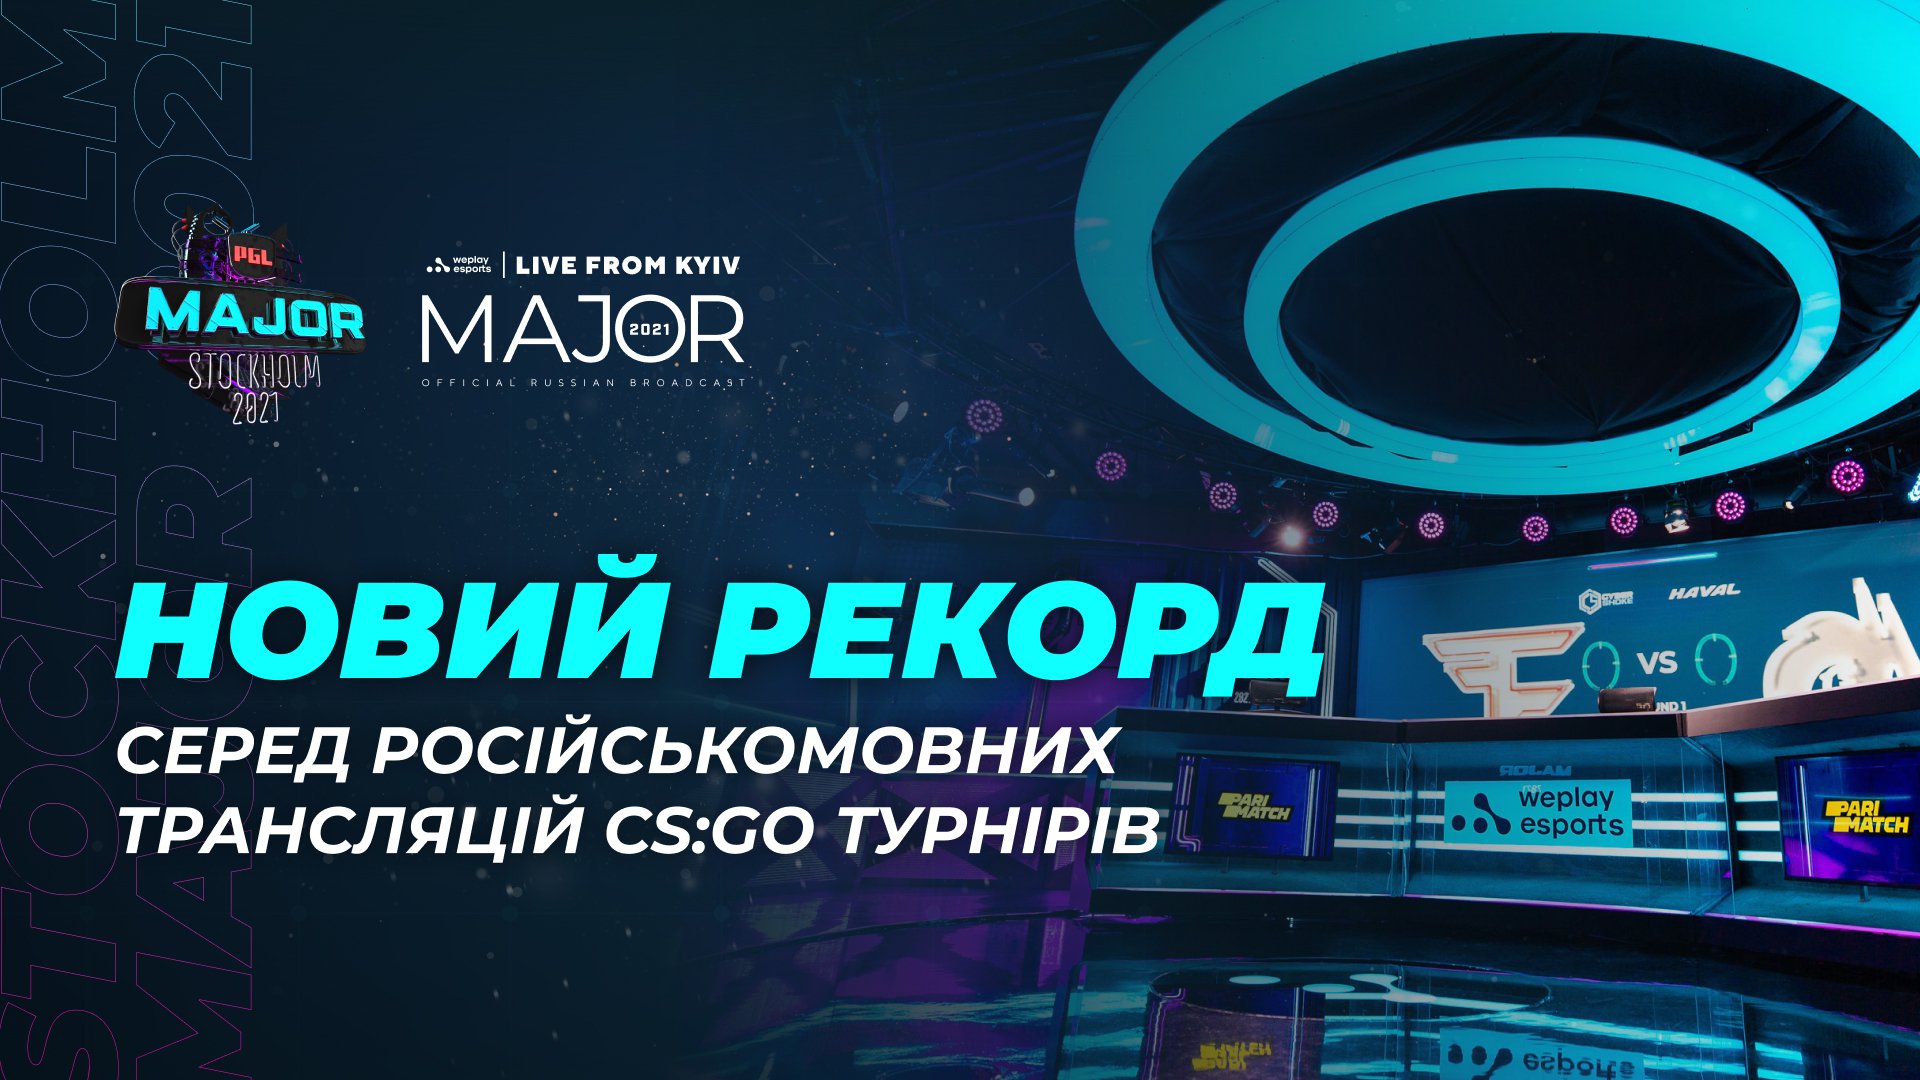 Російськомовна трансляція PGL Major Stockholm 2021 встановила рекорд за кількістю глядачів серед трансляцій CS:GO-турнірів російською мовою. Зображення: WePlay Holding